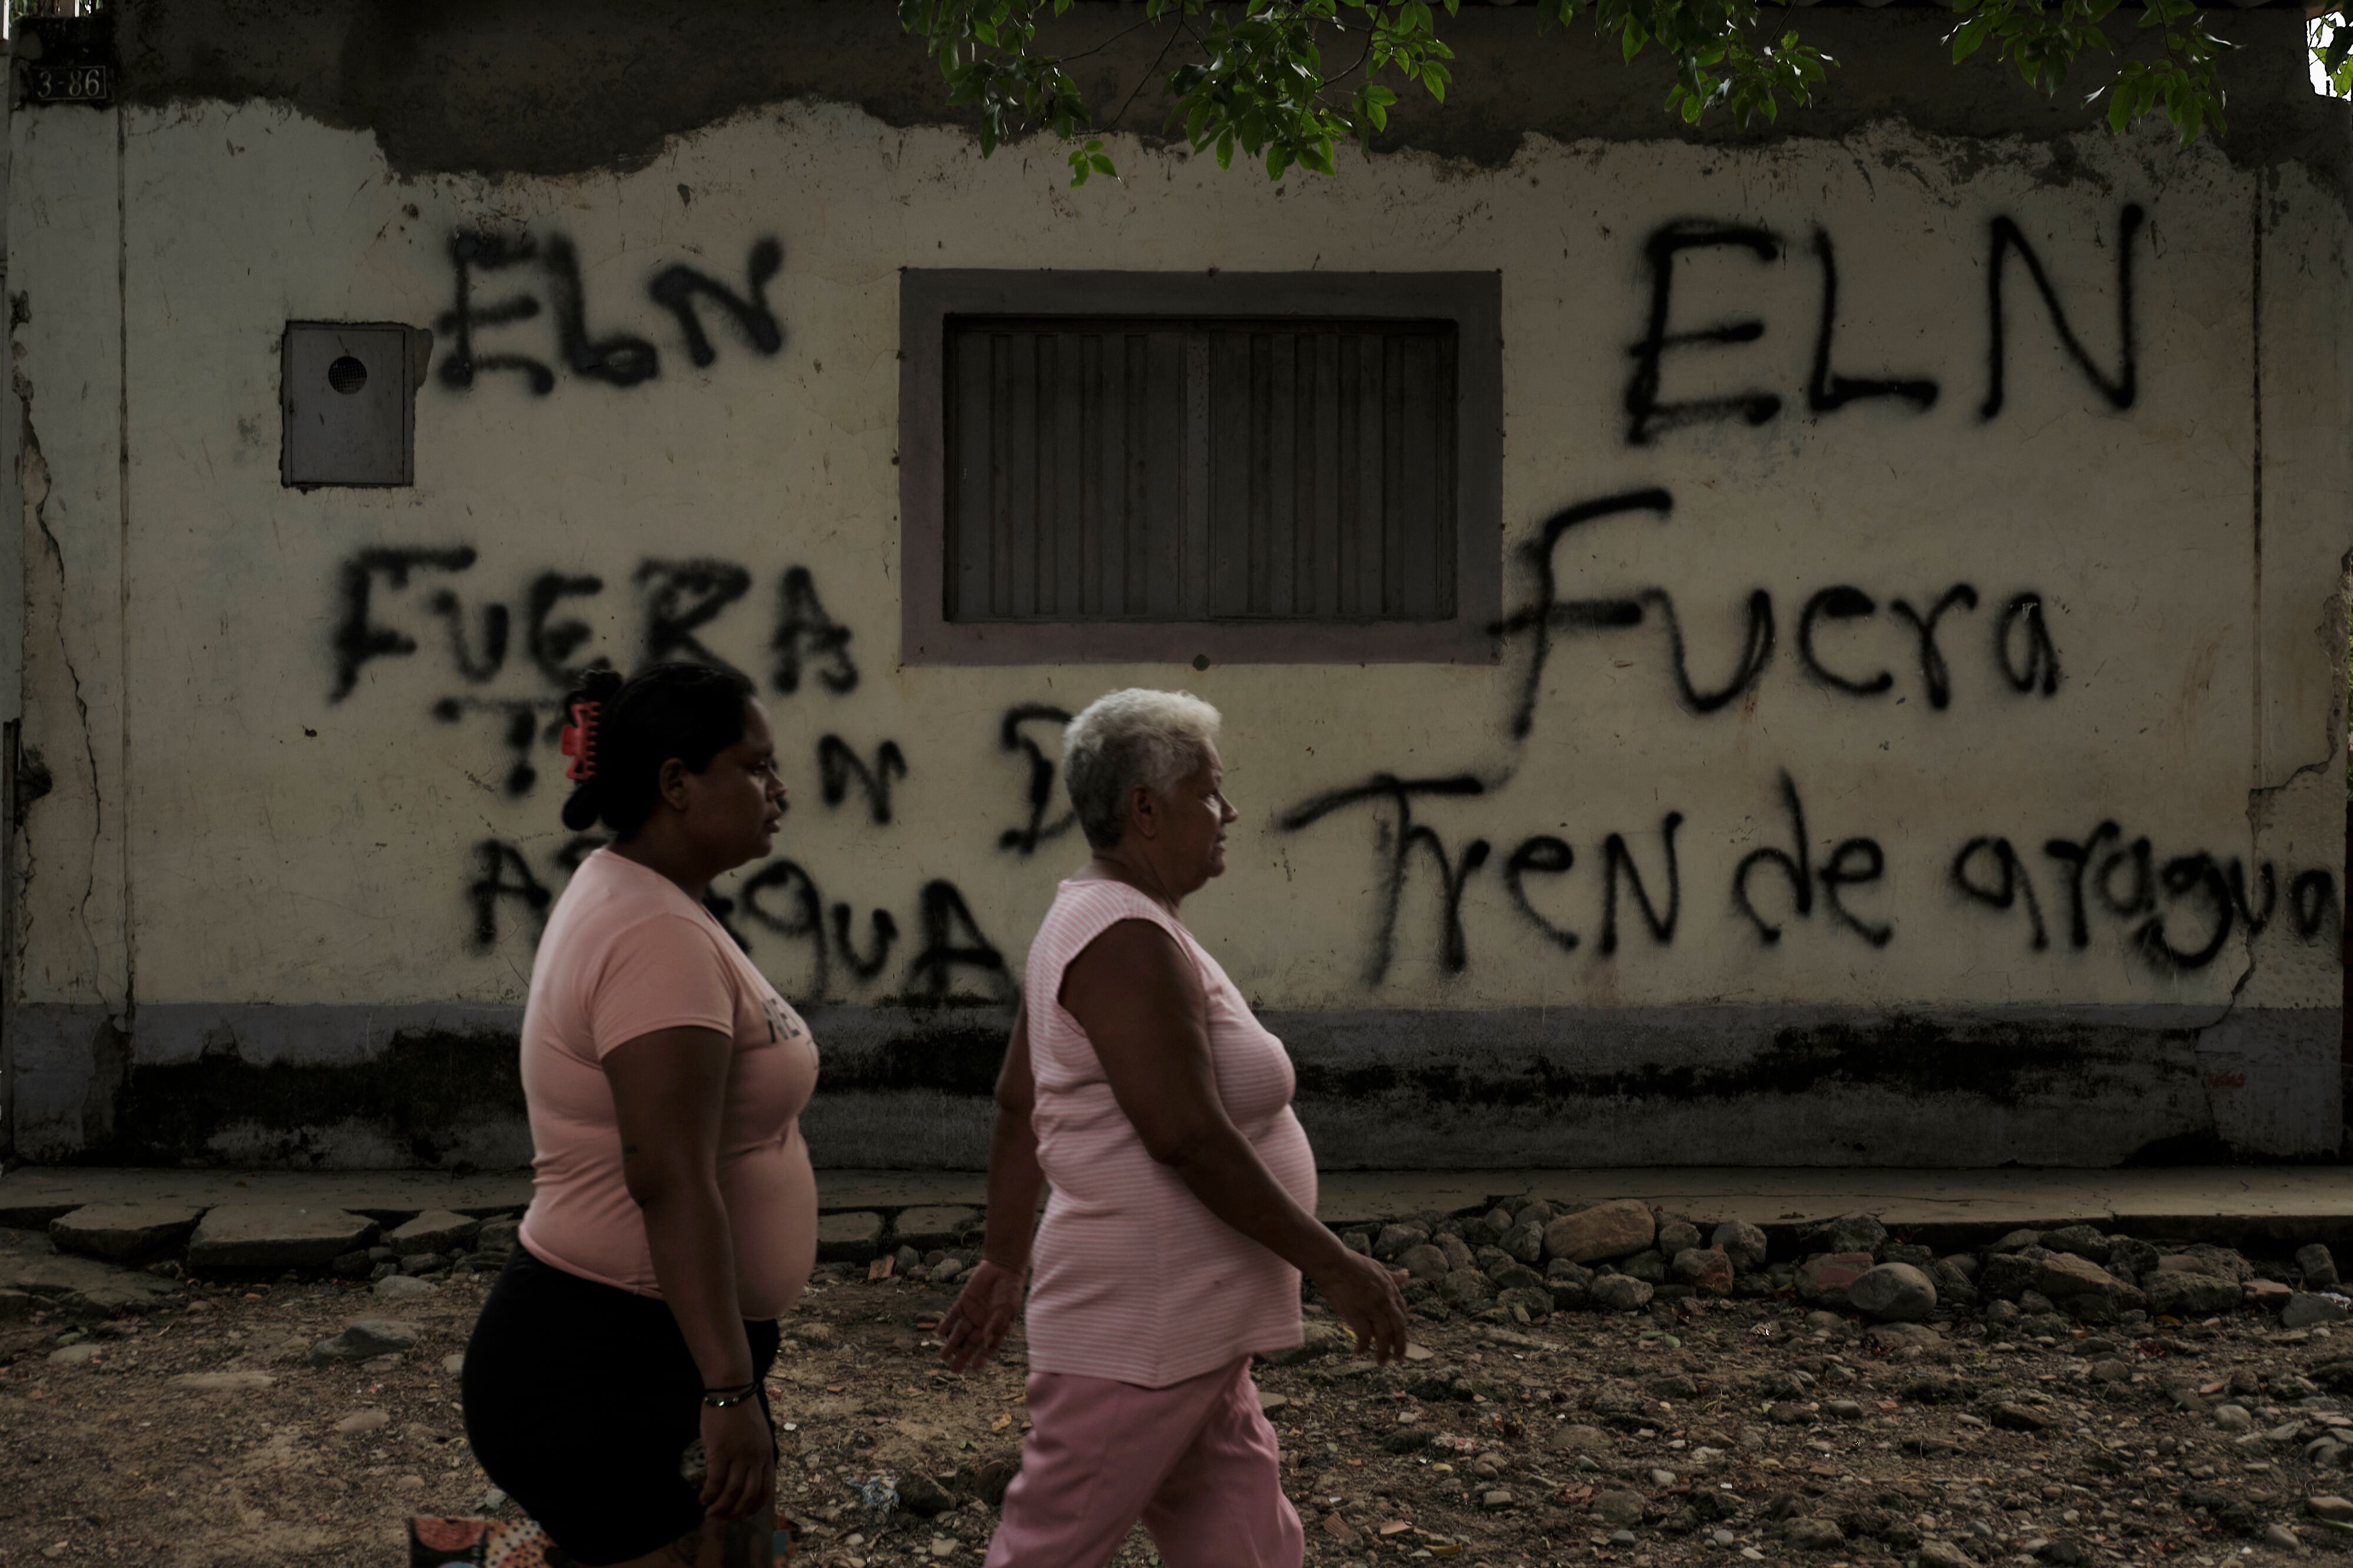 Grafitis alusivos al grupo armado ELN y el Tren de Aragua en las fachadas de las casas cerca a las trochas en Cúcuta, el 29 de marzo.